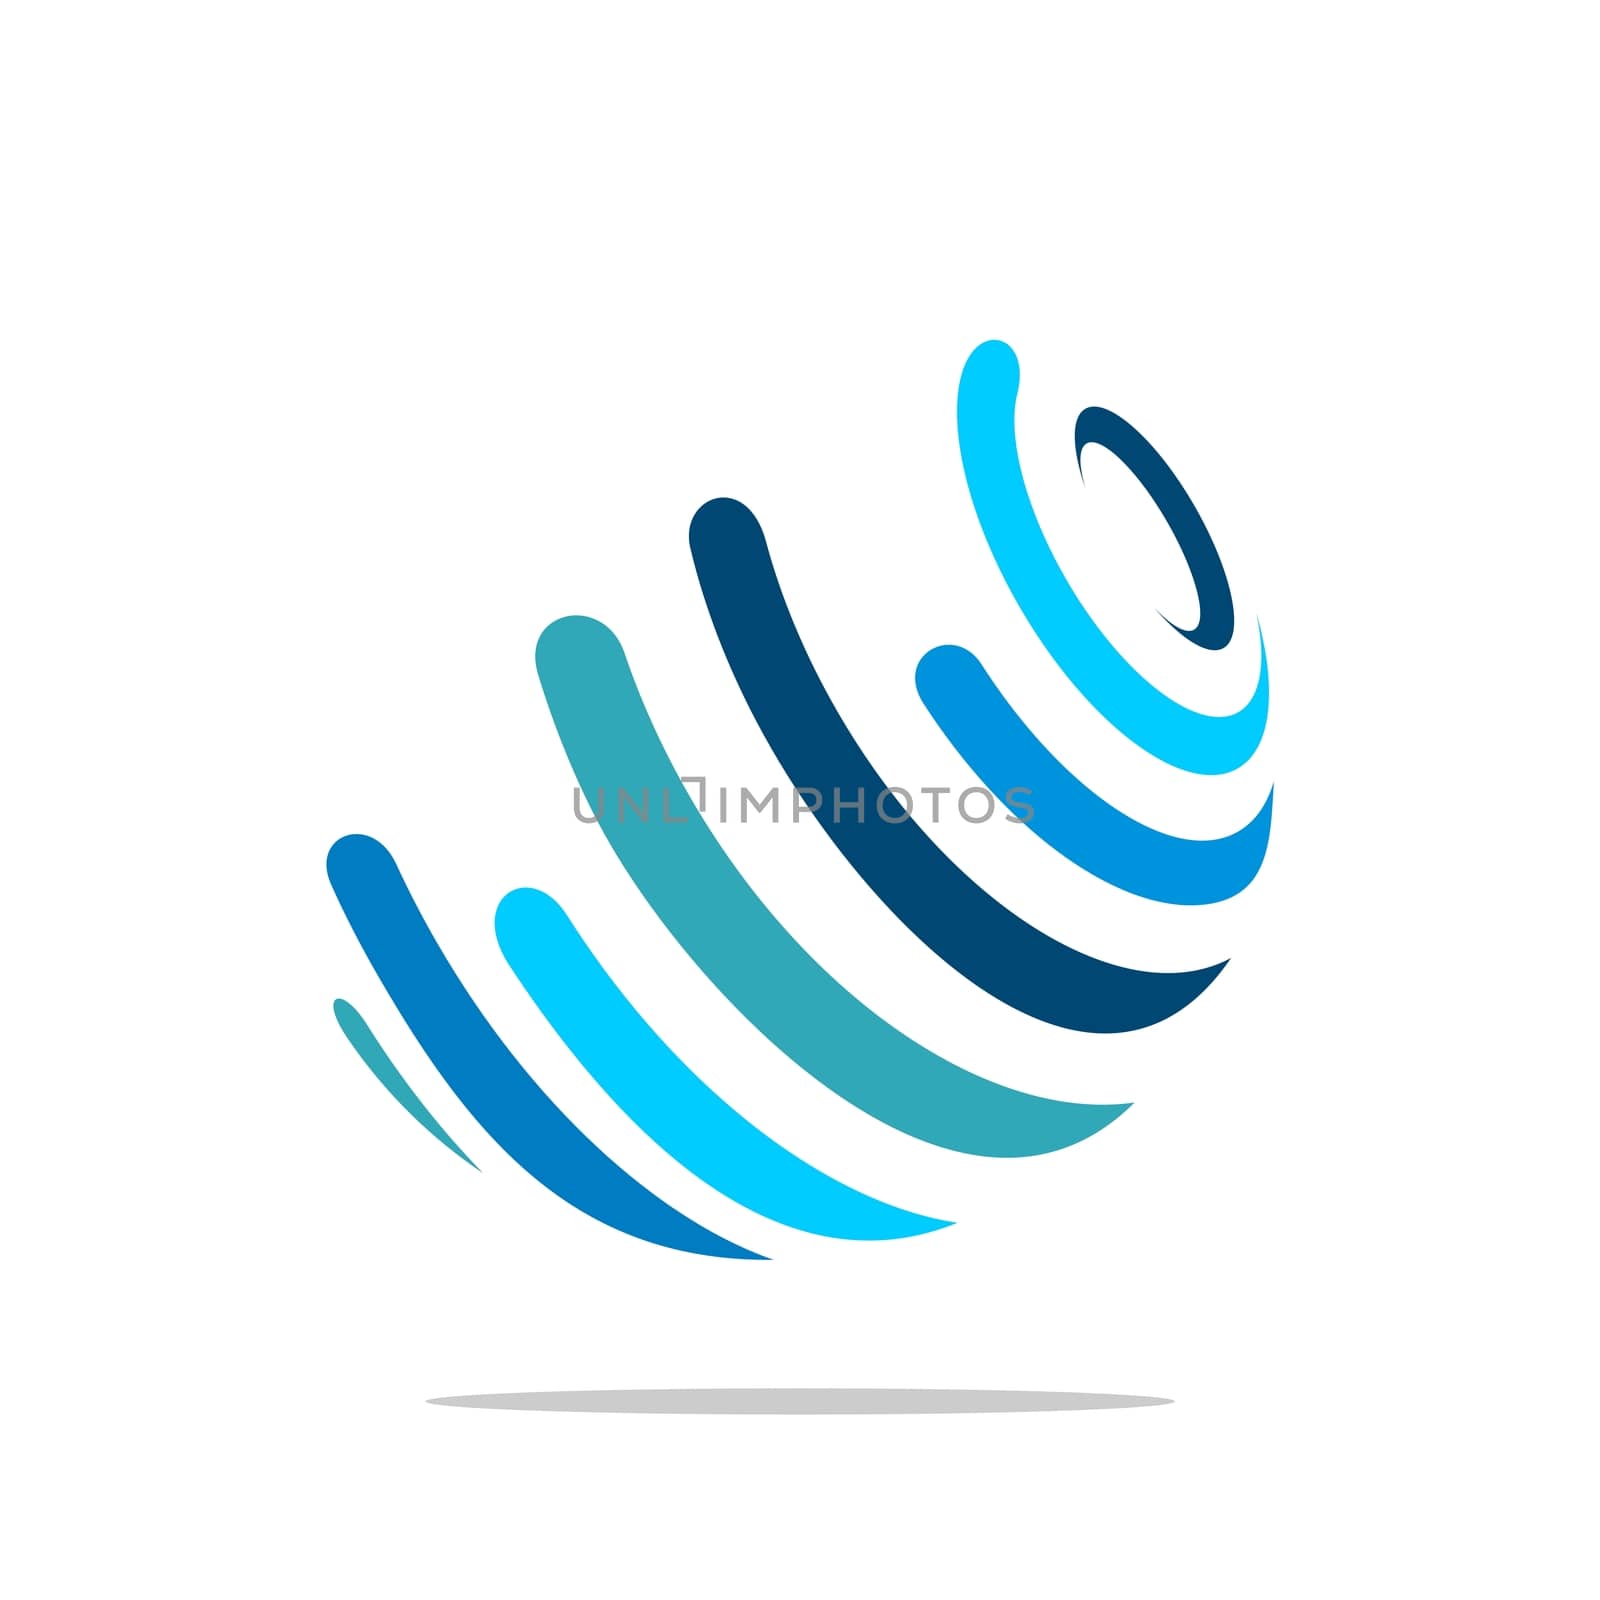 Globe Logo Template for Communication Business Illustration Design. Vector EPS 10.